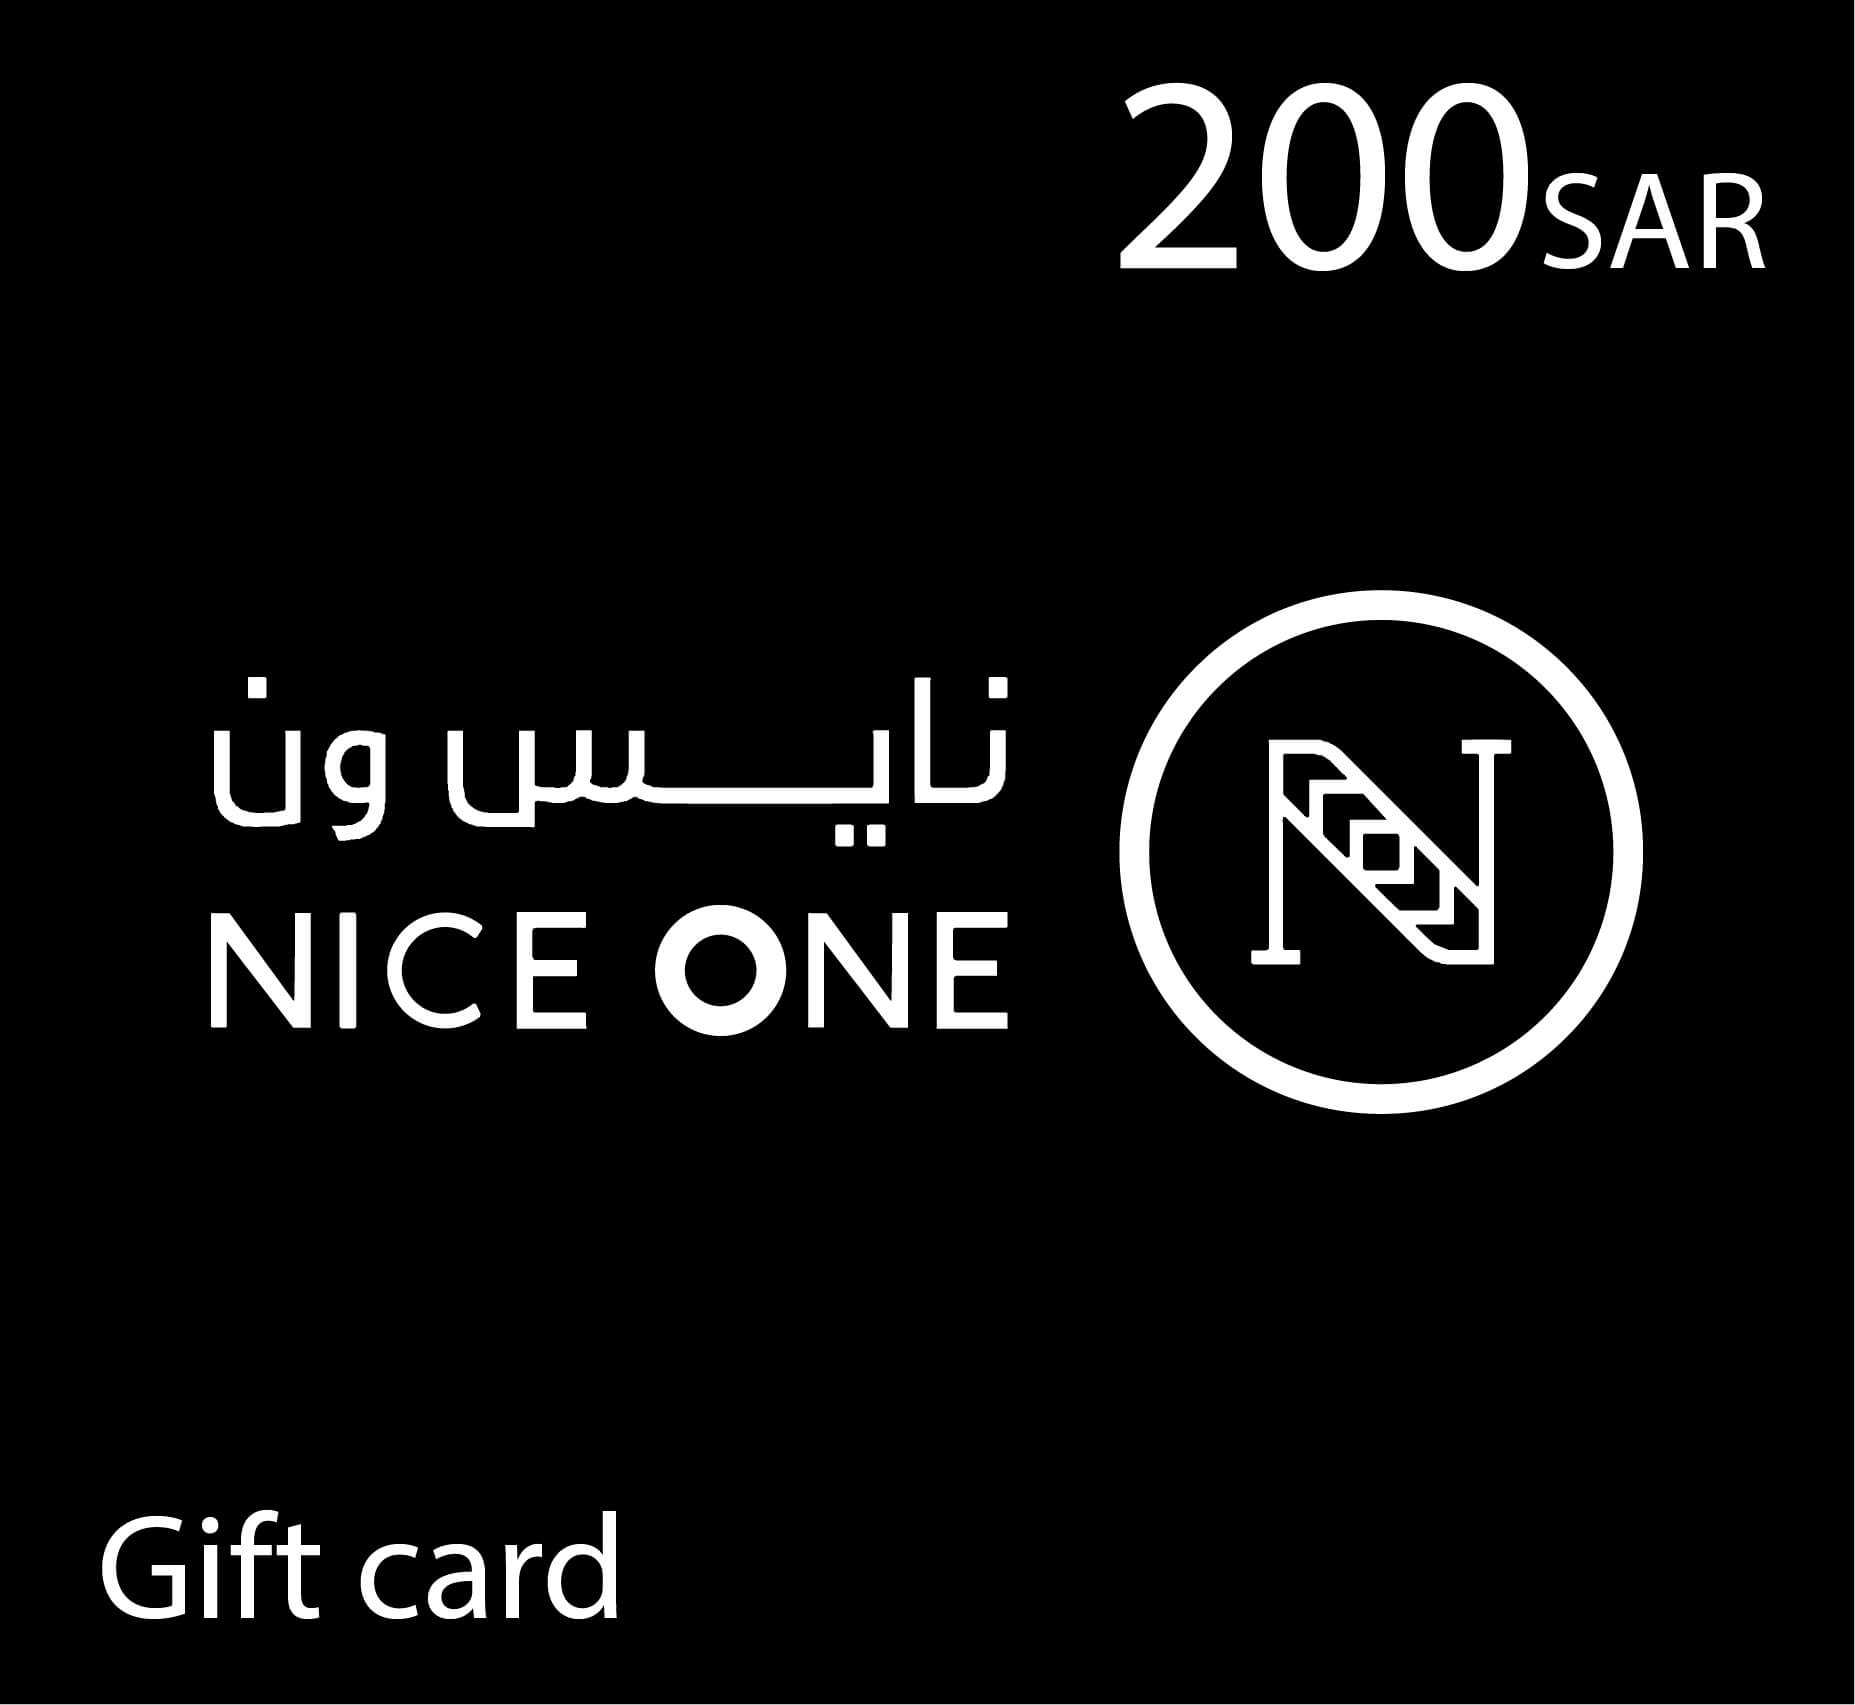 NiceOne Gift Card - 200 SAR